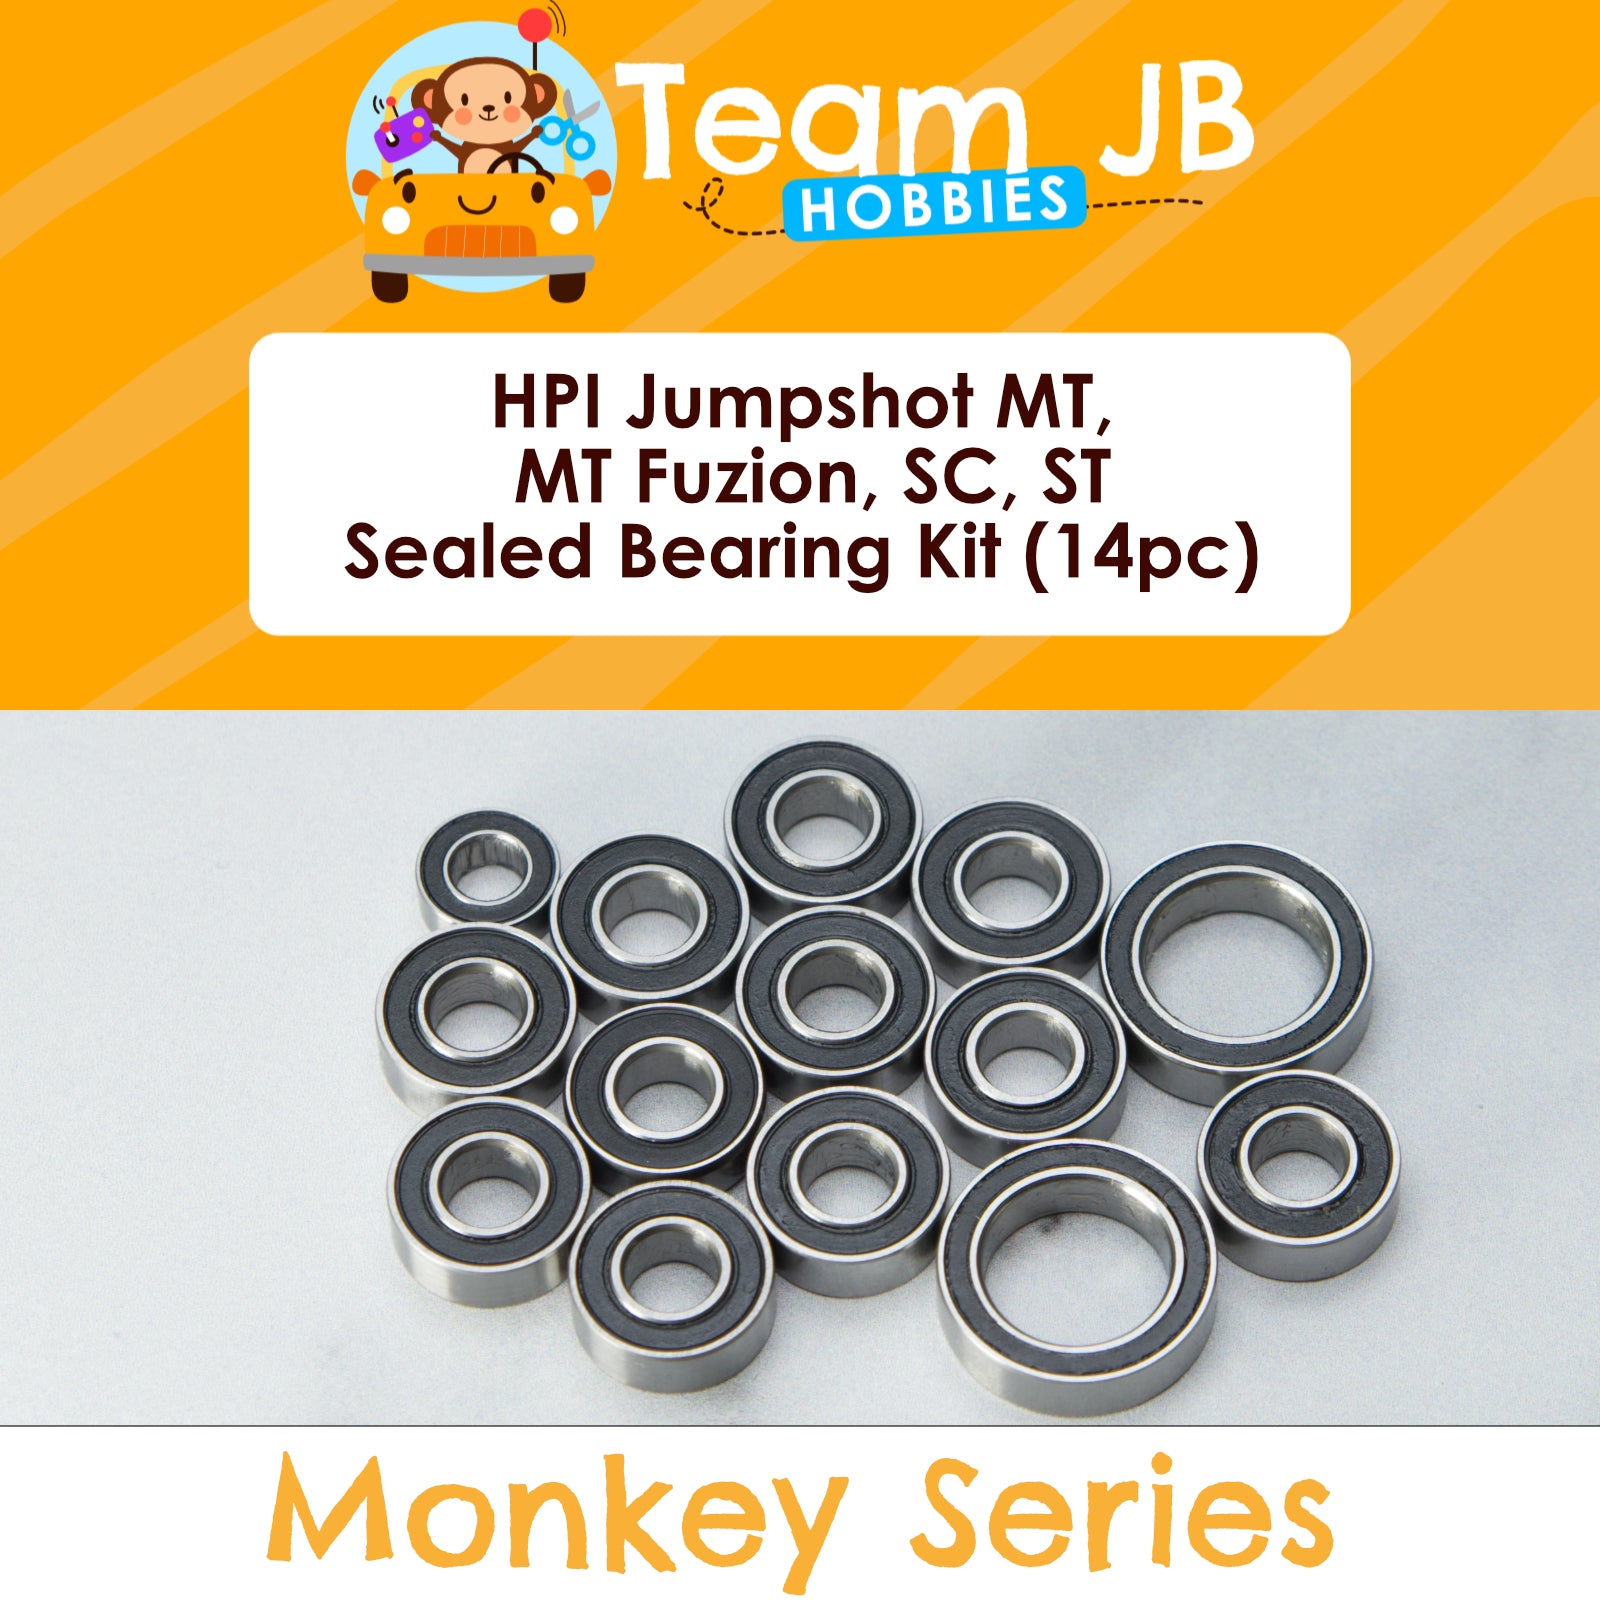 HPI Jumpshot MT, MT Fuzion, SC, ST - Sealed Bearing Kit